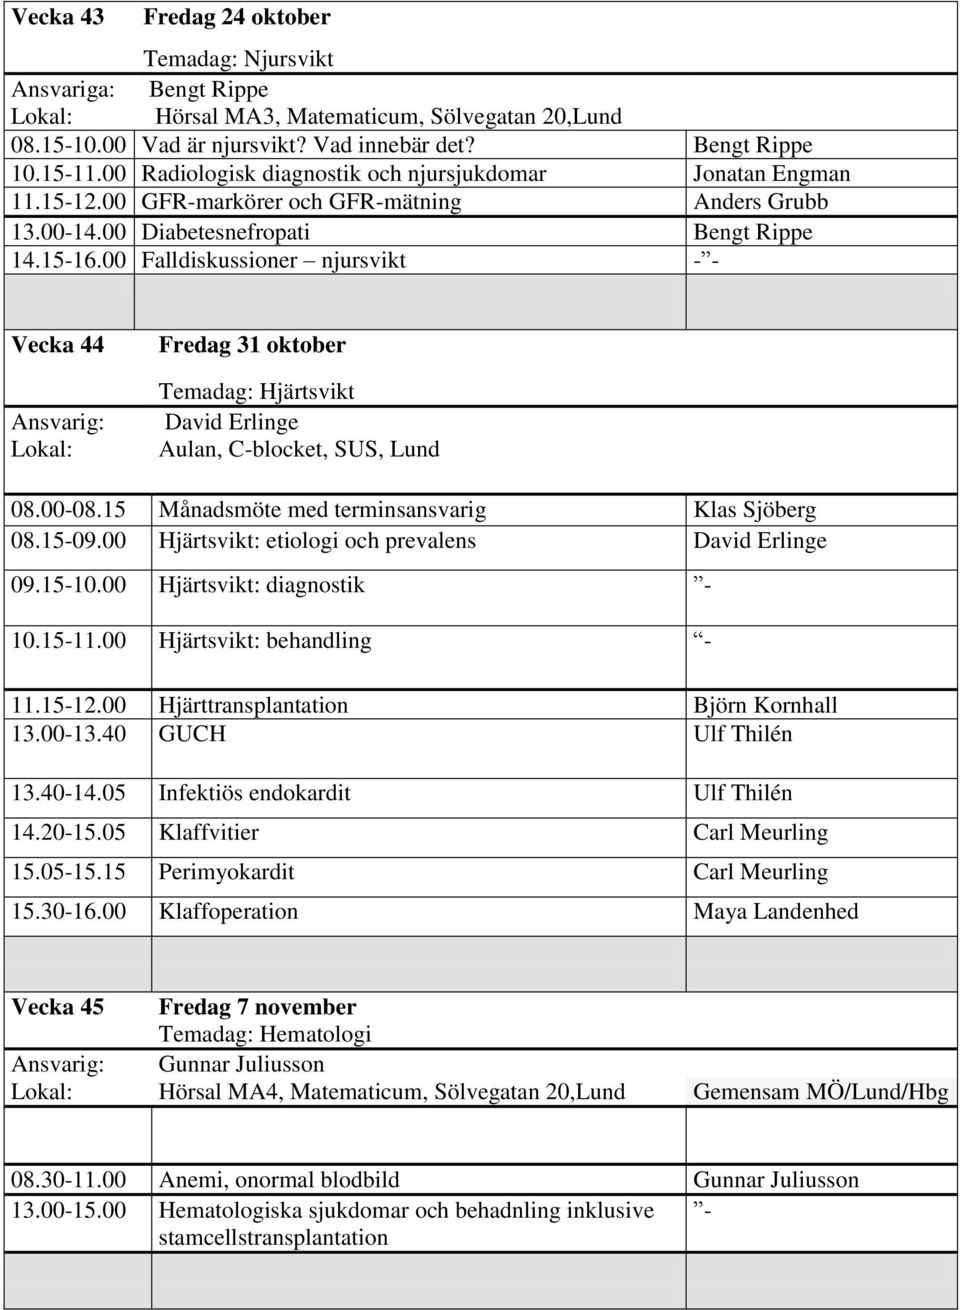 00 Falldiskussioner njursvikt - - Vecka 44 Fredag 31 oktober Temadag: Hjärtsvikt David Erlinge Aulan, C-blocket, SUS, Lund 08.00-08.15 Månadsmöte med terminsansvarig Klas Sjöberg 08.15-09.